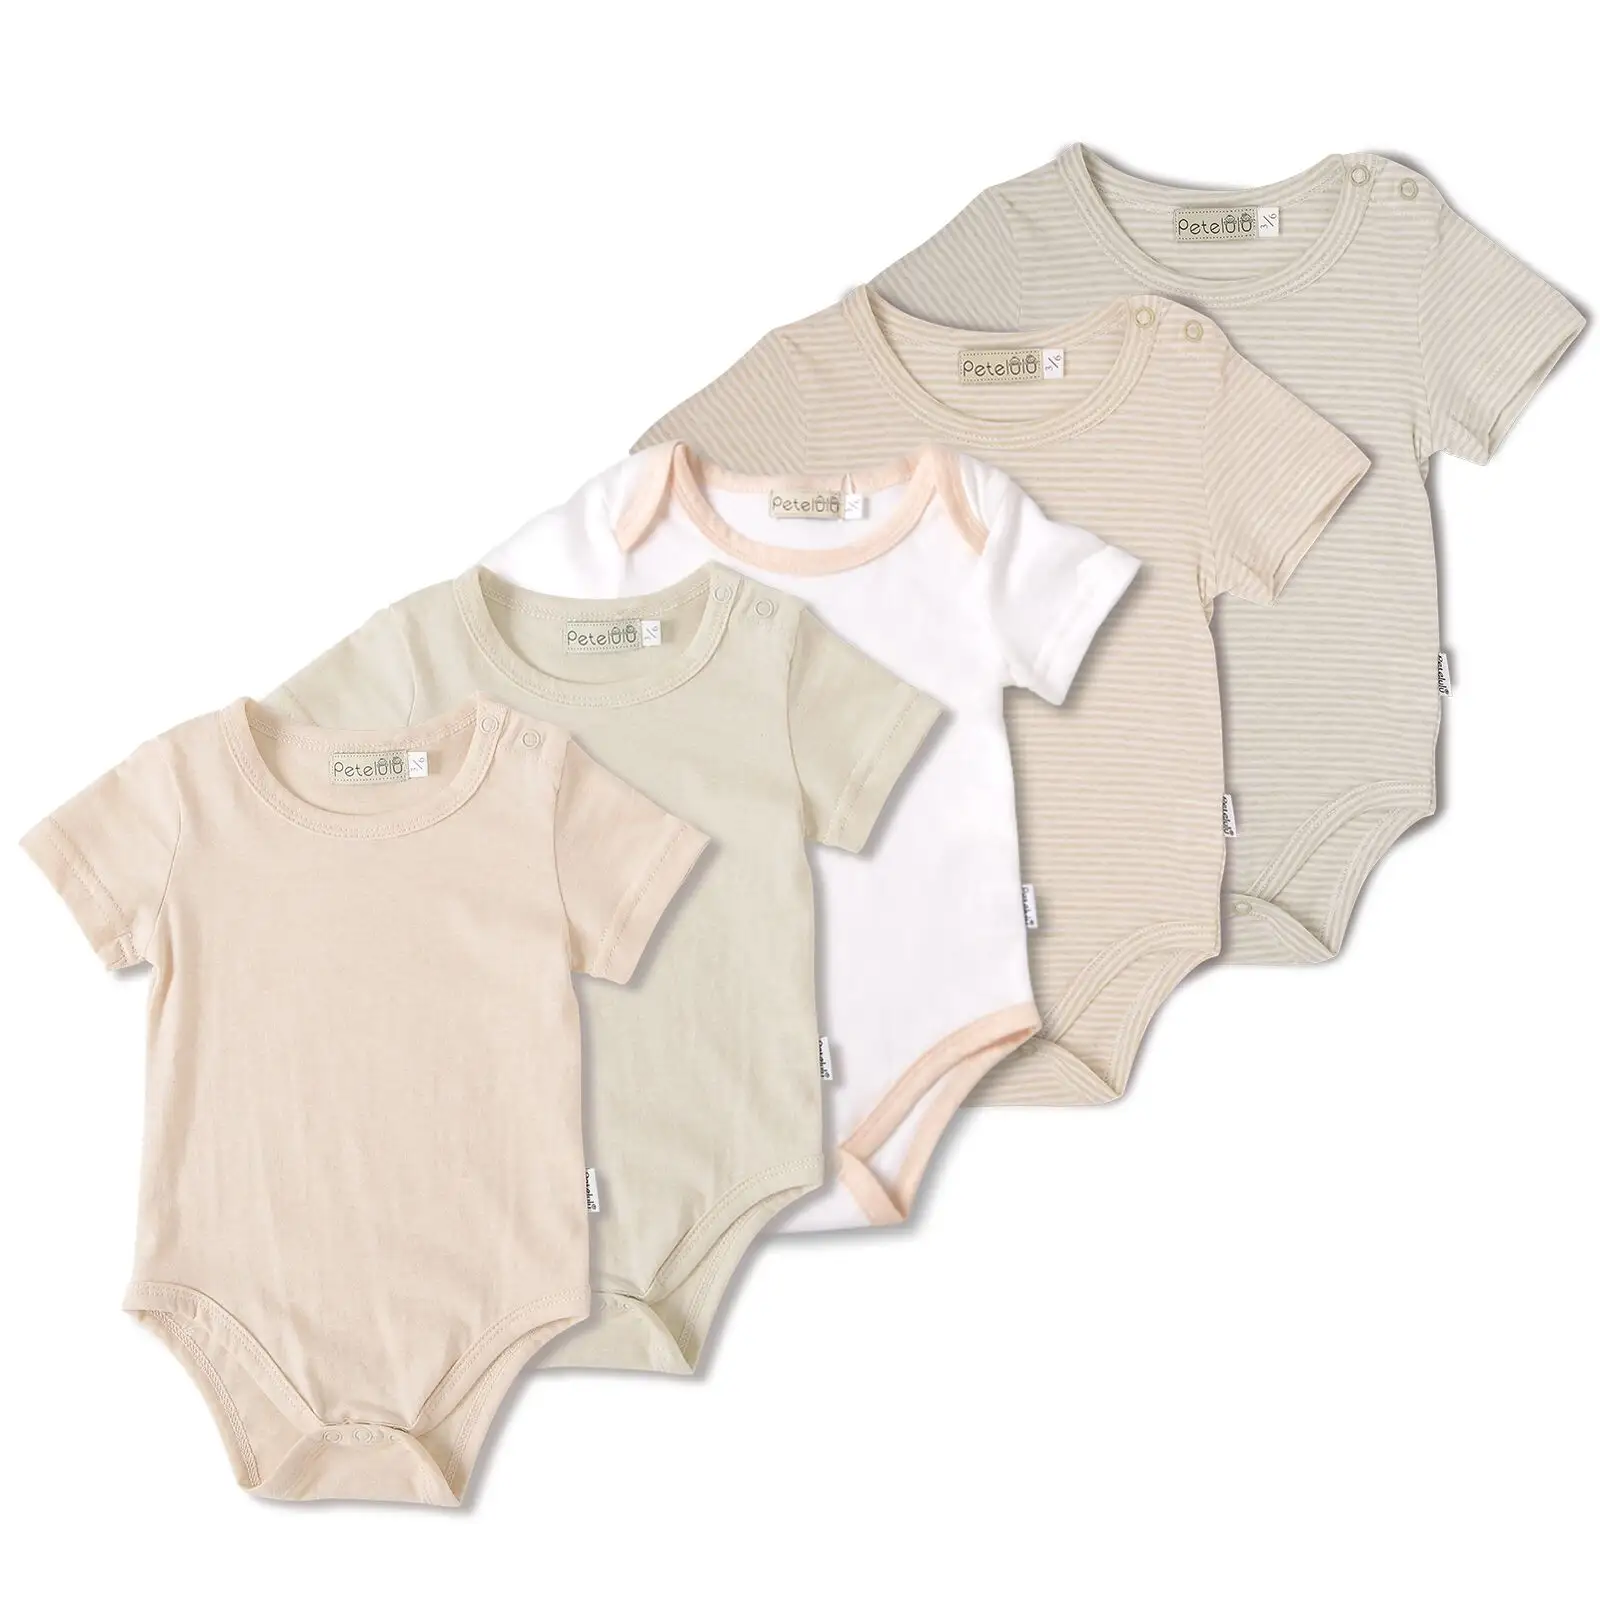 Boa venda 100% algodão natural liso bonito orgânico bebê romper roupas de bebê